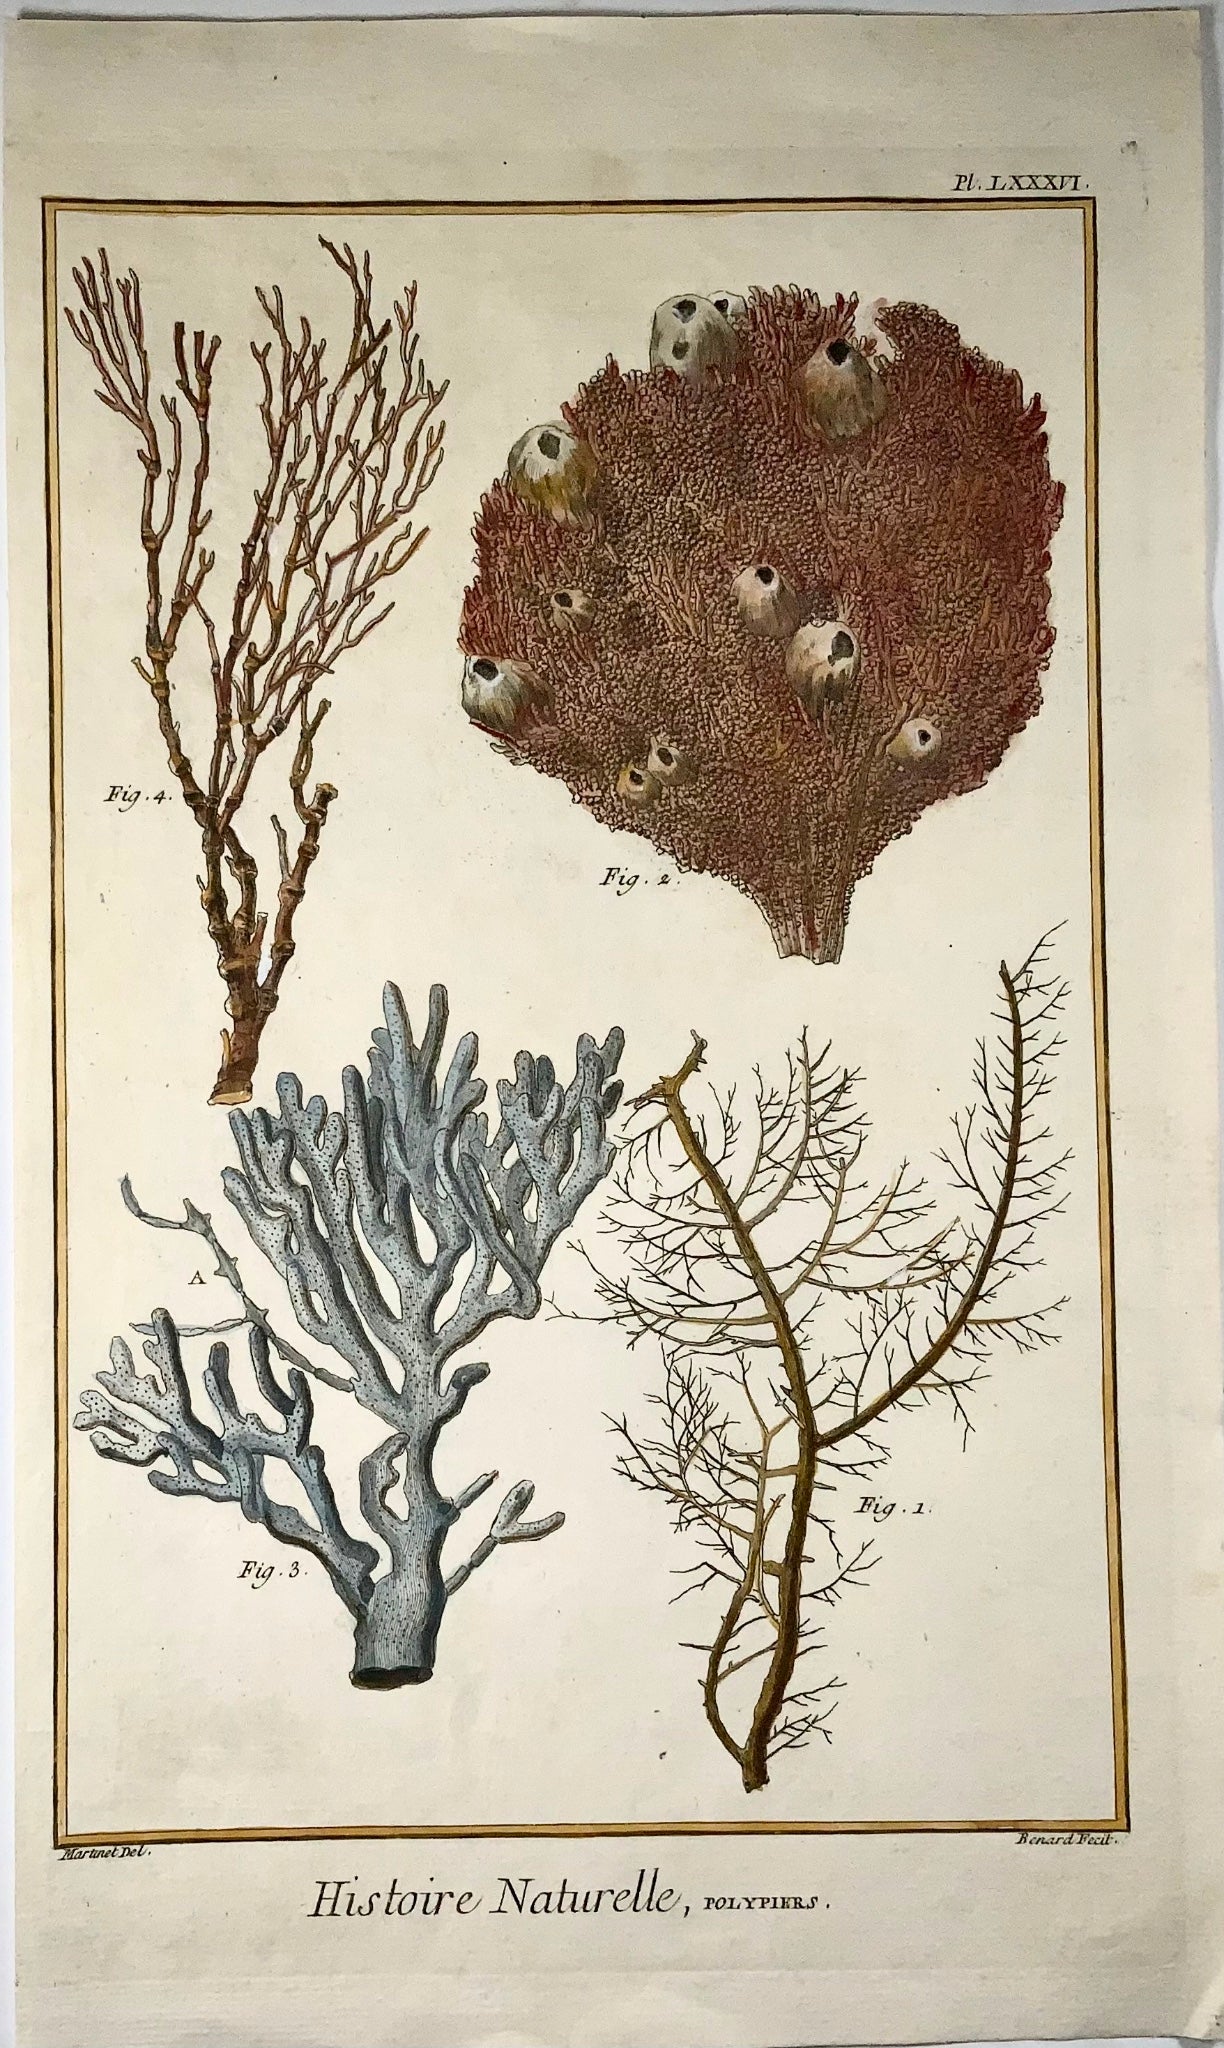 1751 Corallo, Polipi, Martinet, vita marina, colorato a mano, 39 cm